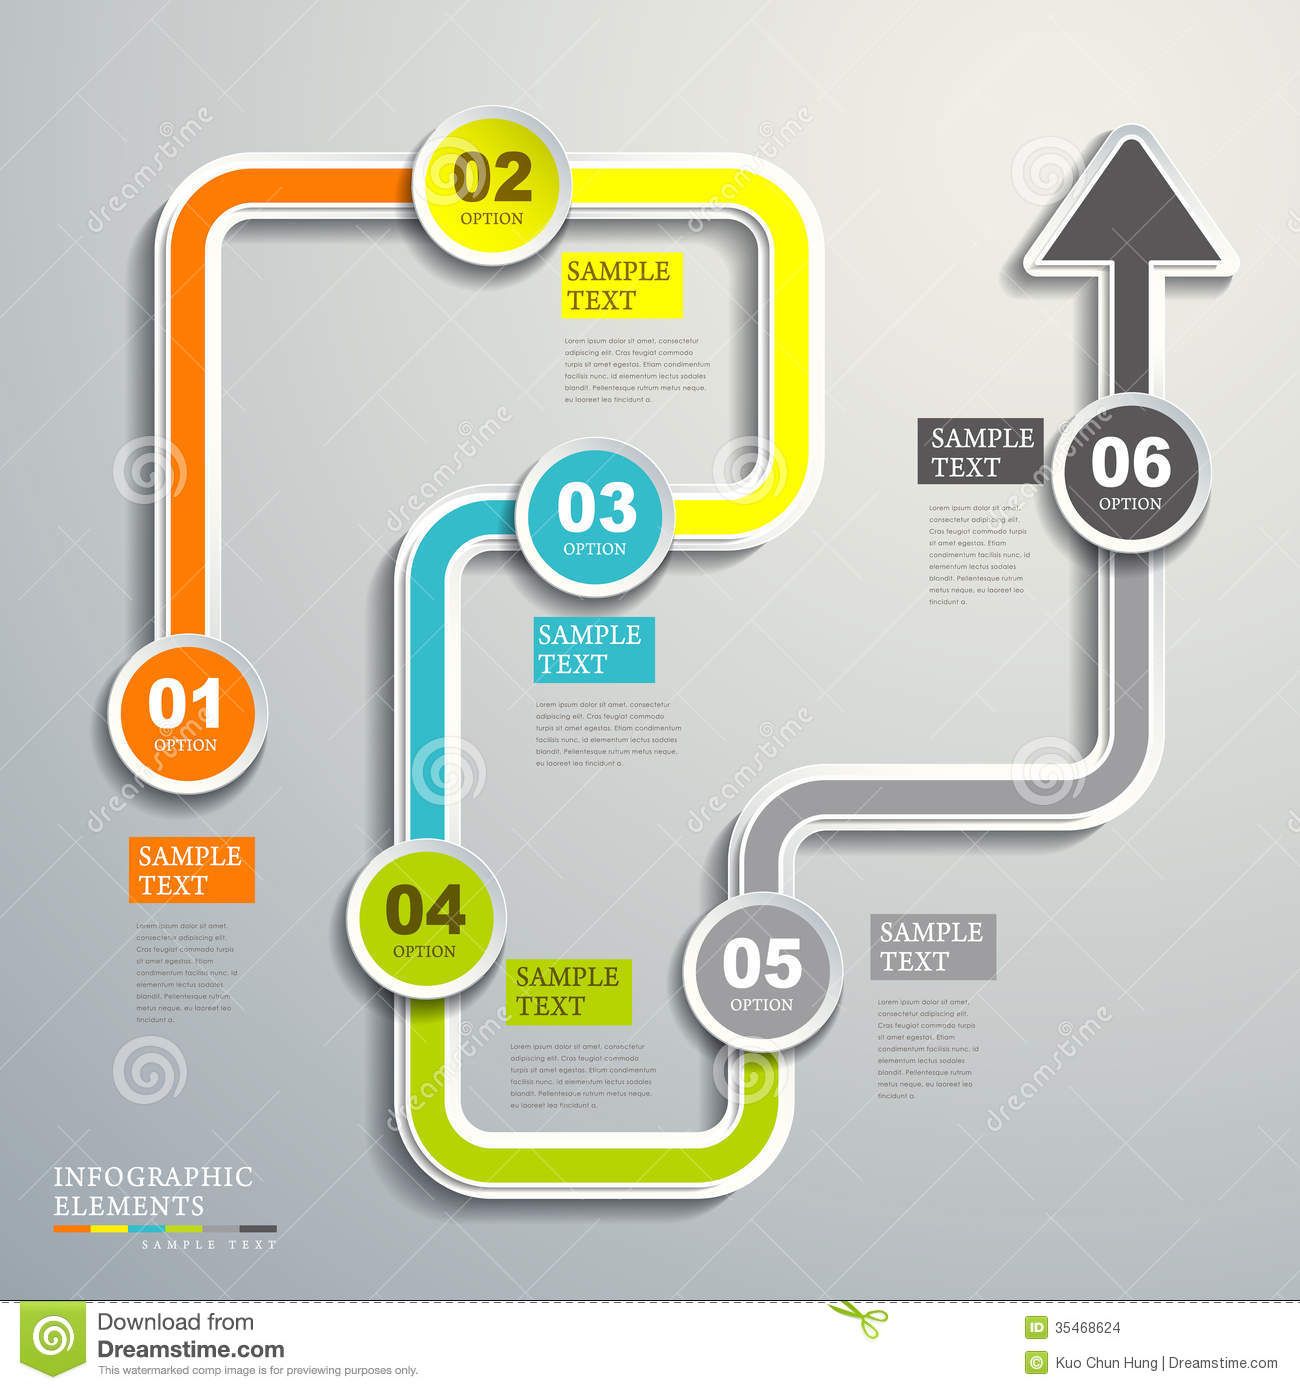 Creative Flow Infographic Powerpoint template | SlideBazaar